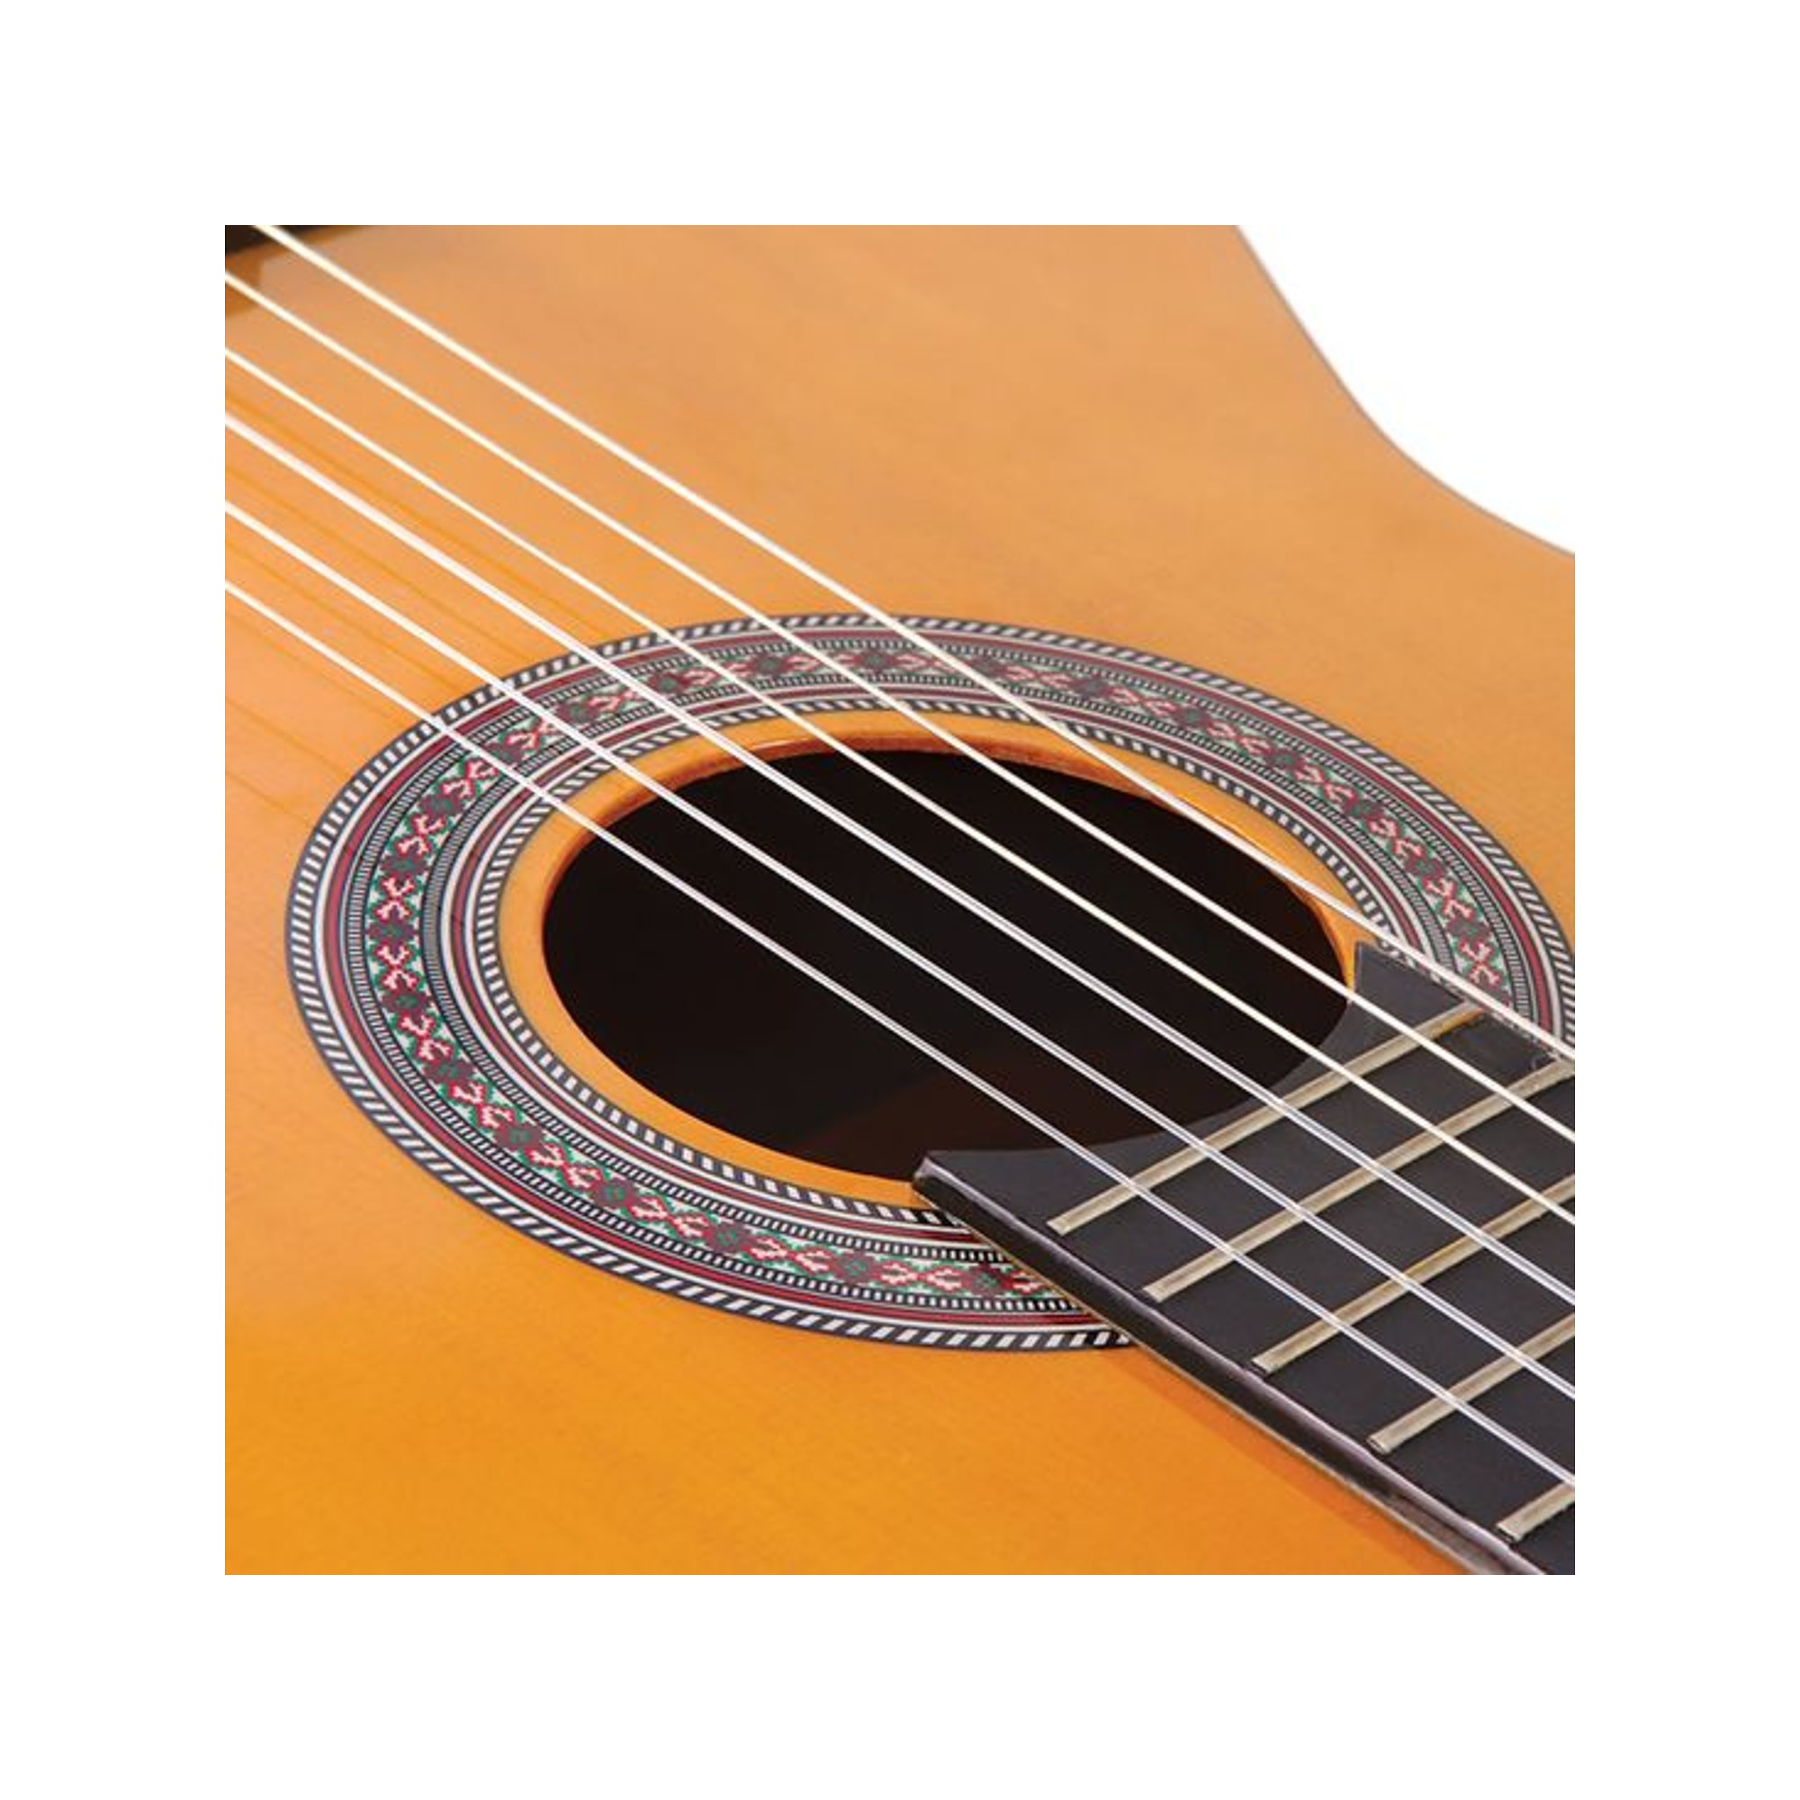 Enc44 Guitarra Clásica Encore